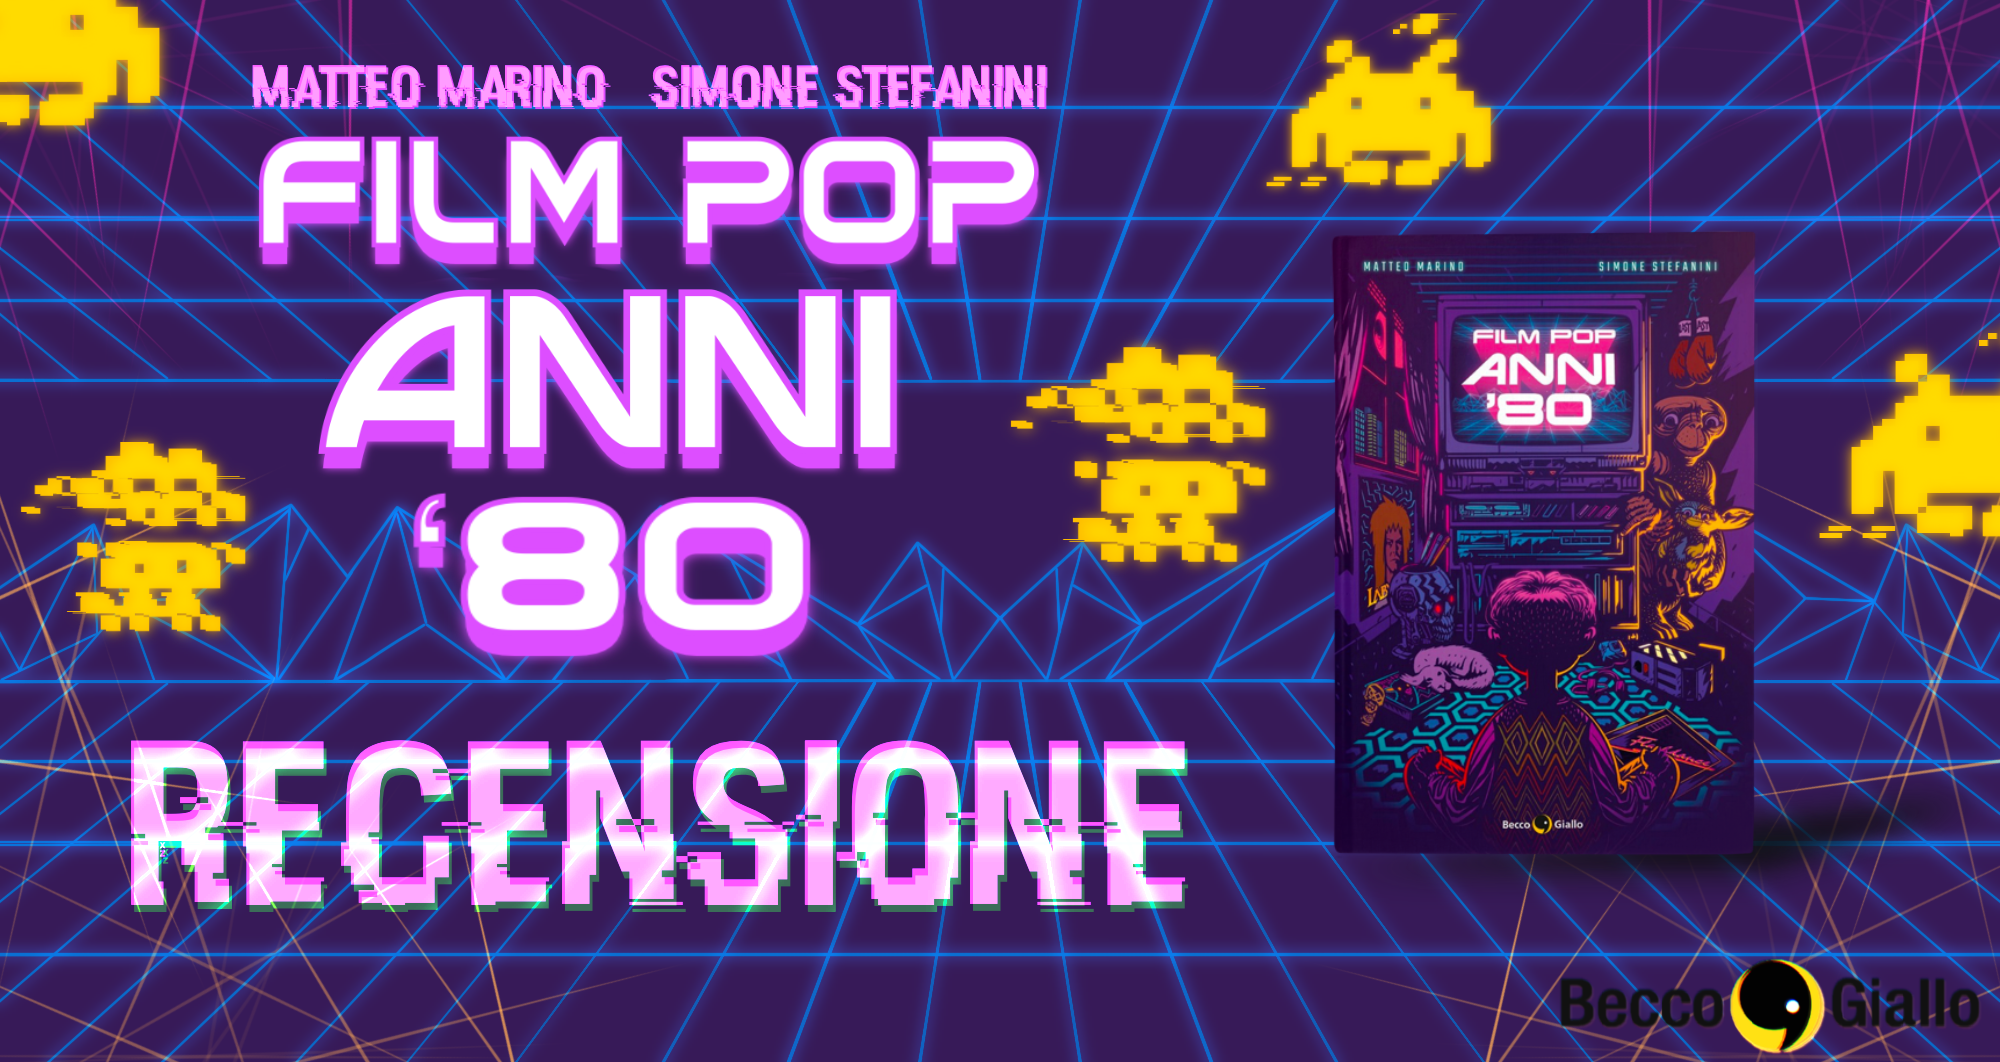 Film Pop Anni ‘80, Matteo Marino & Simone Stefanini – Recensione